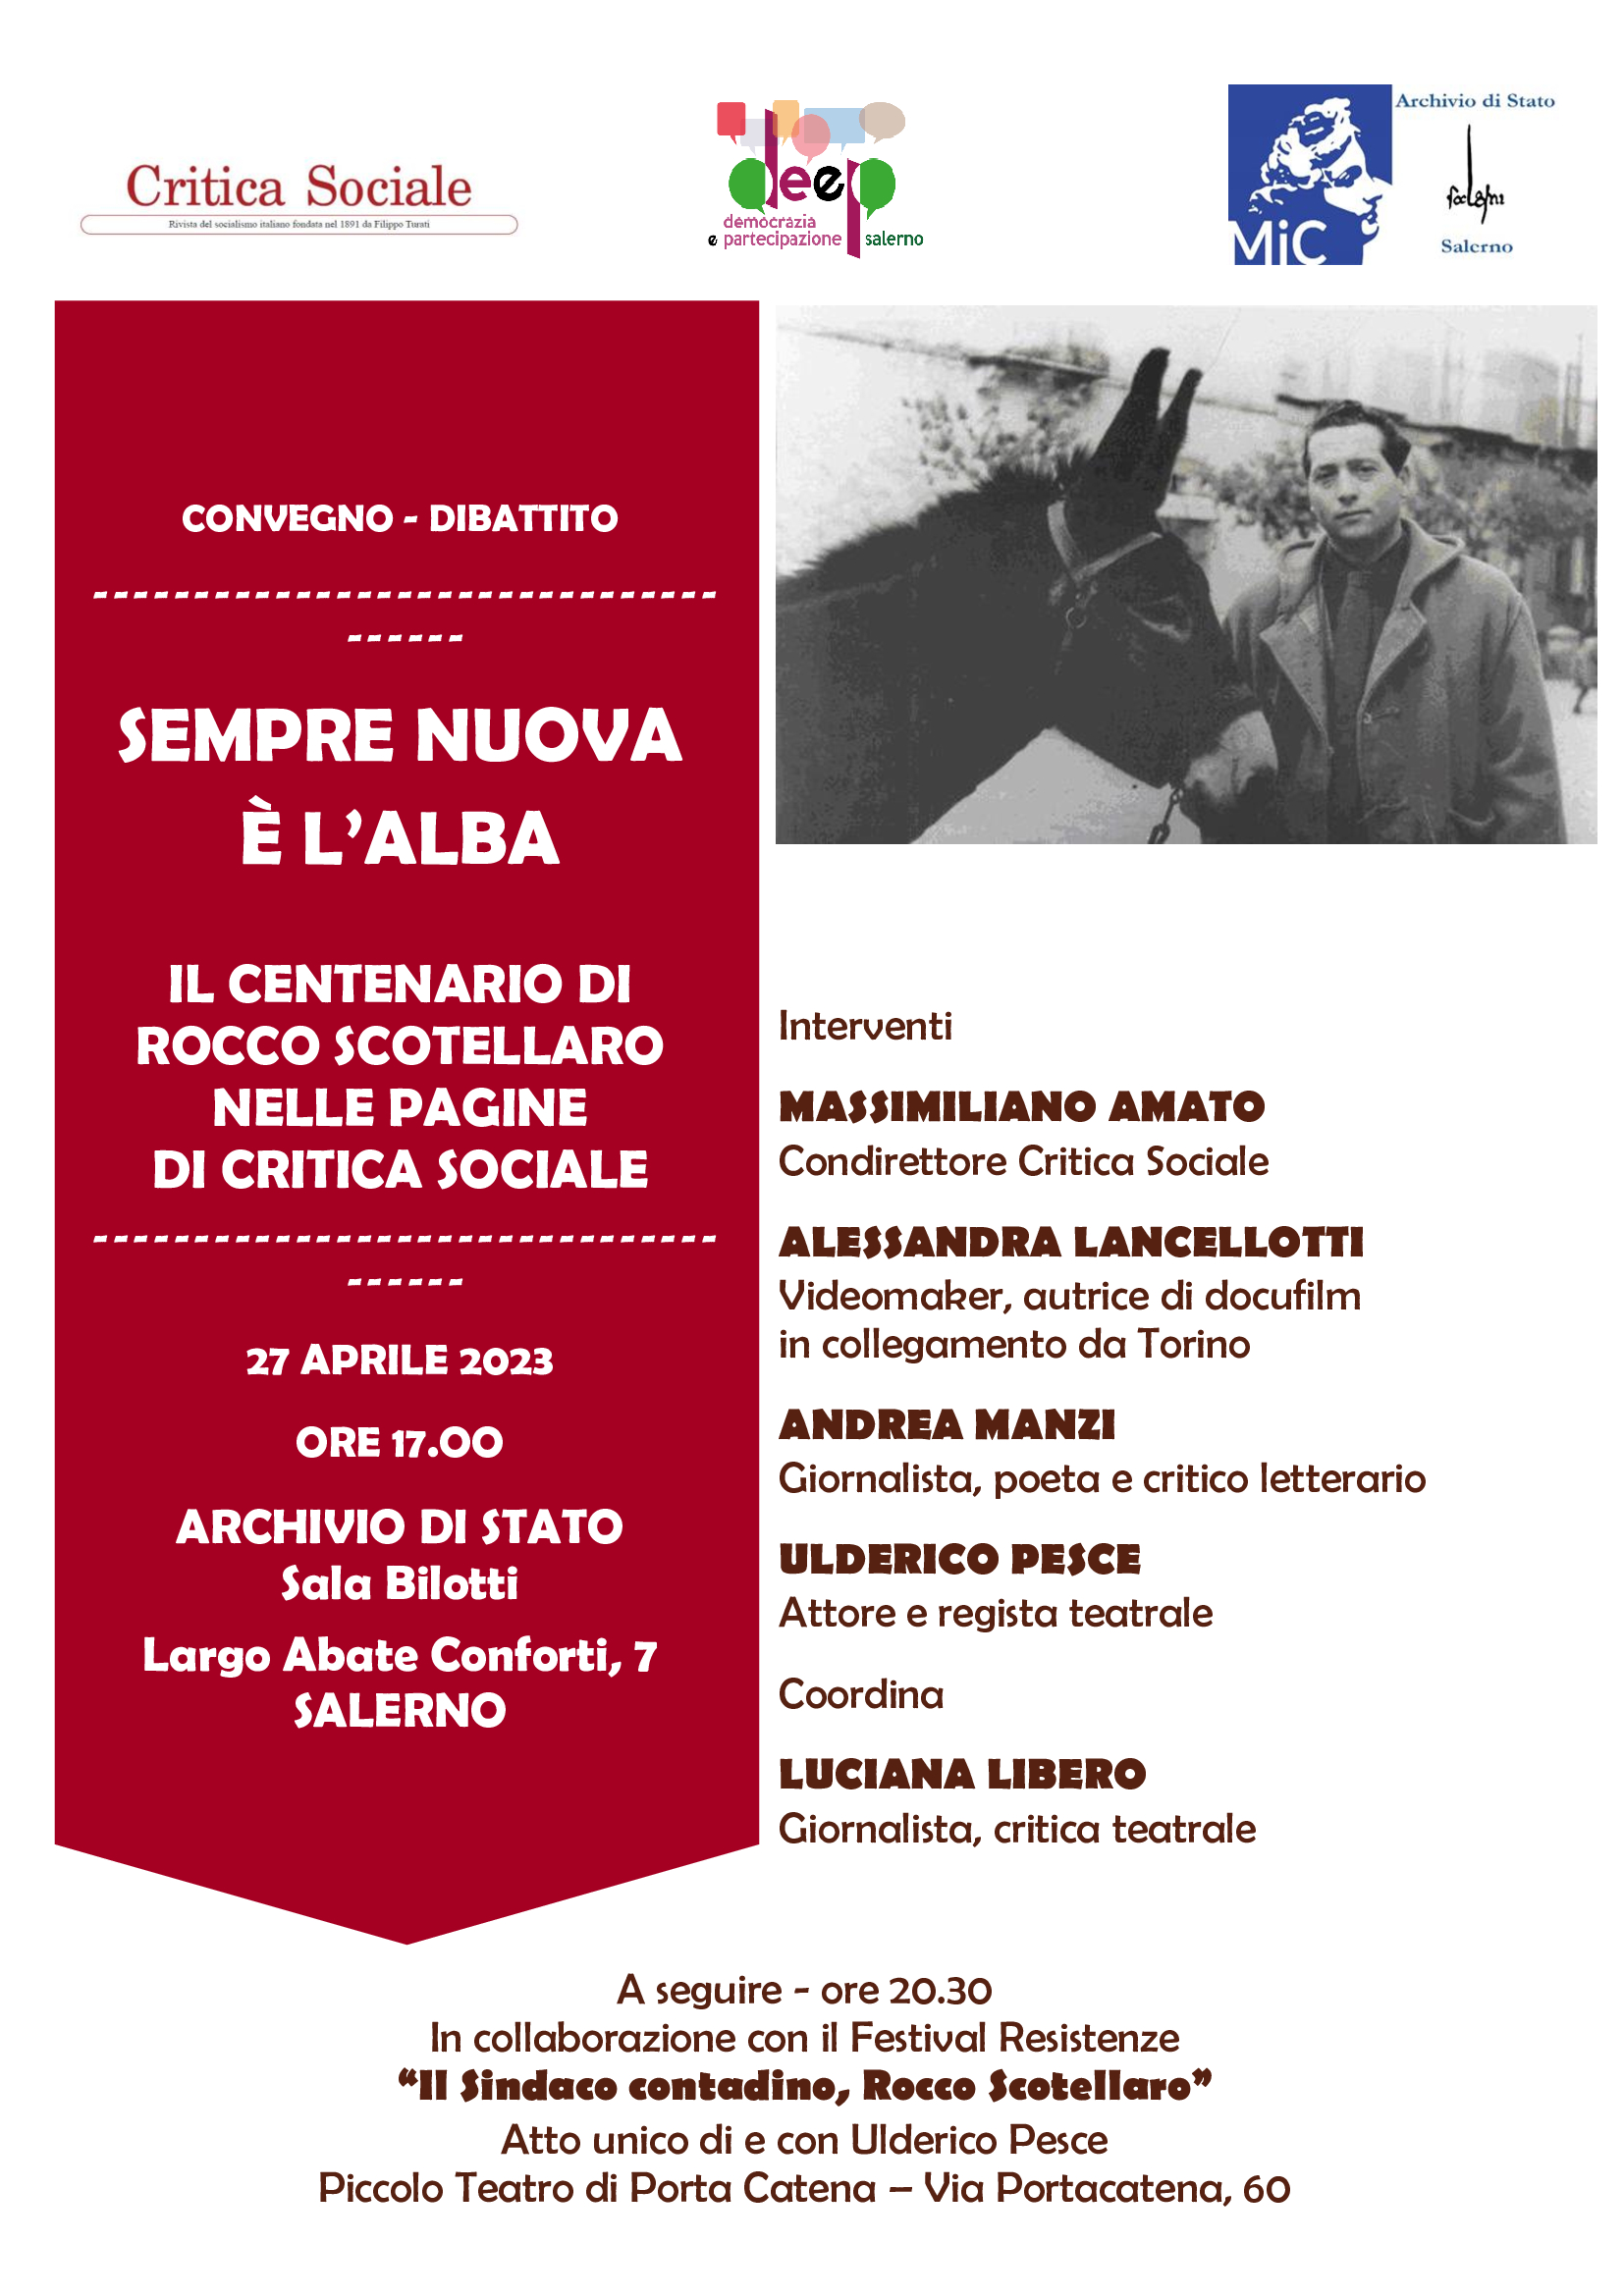 Giovedì 27 aprile a Salerno il centenario della nascita di Scotellaro nelle pagine di Critica Sociale